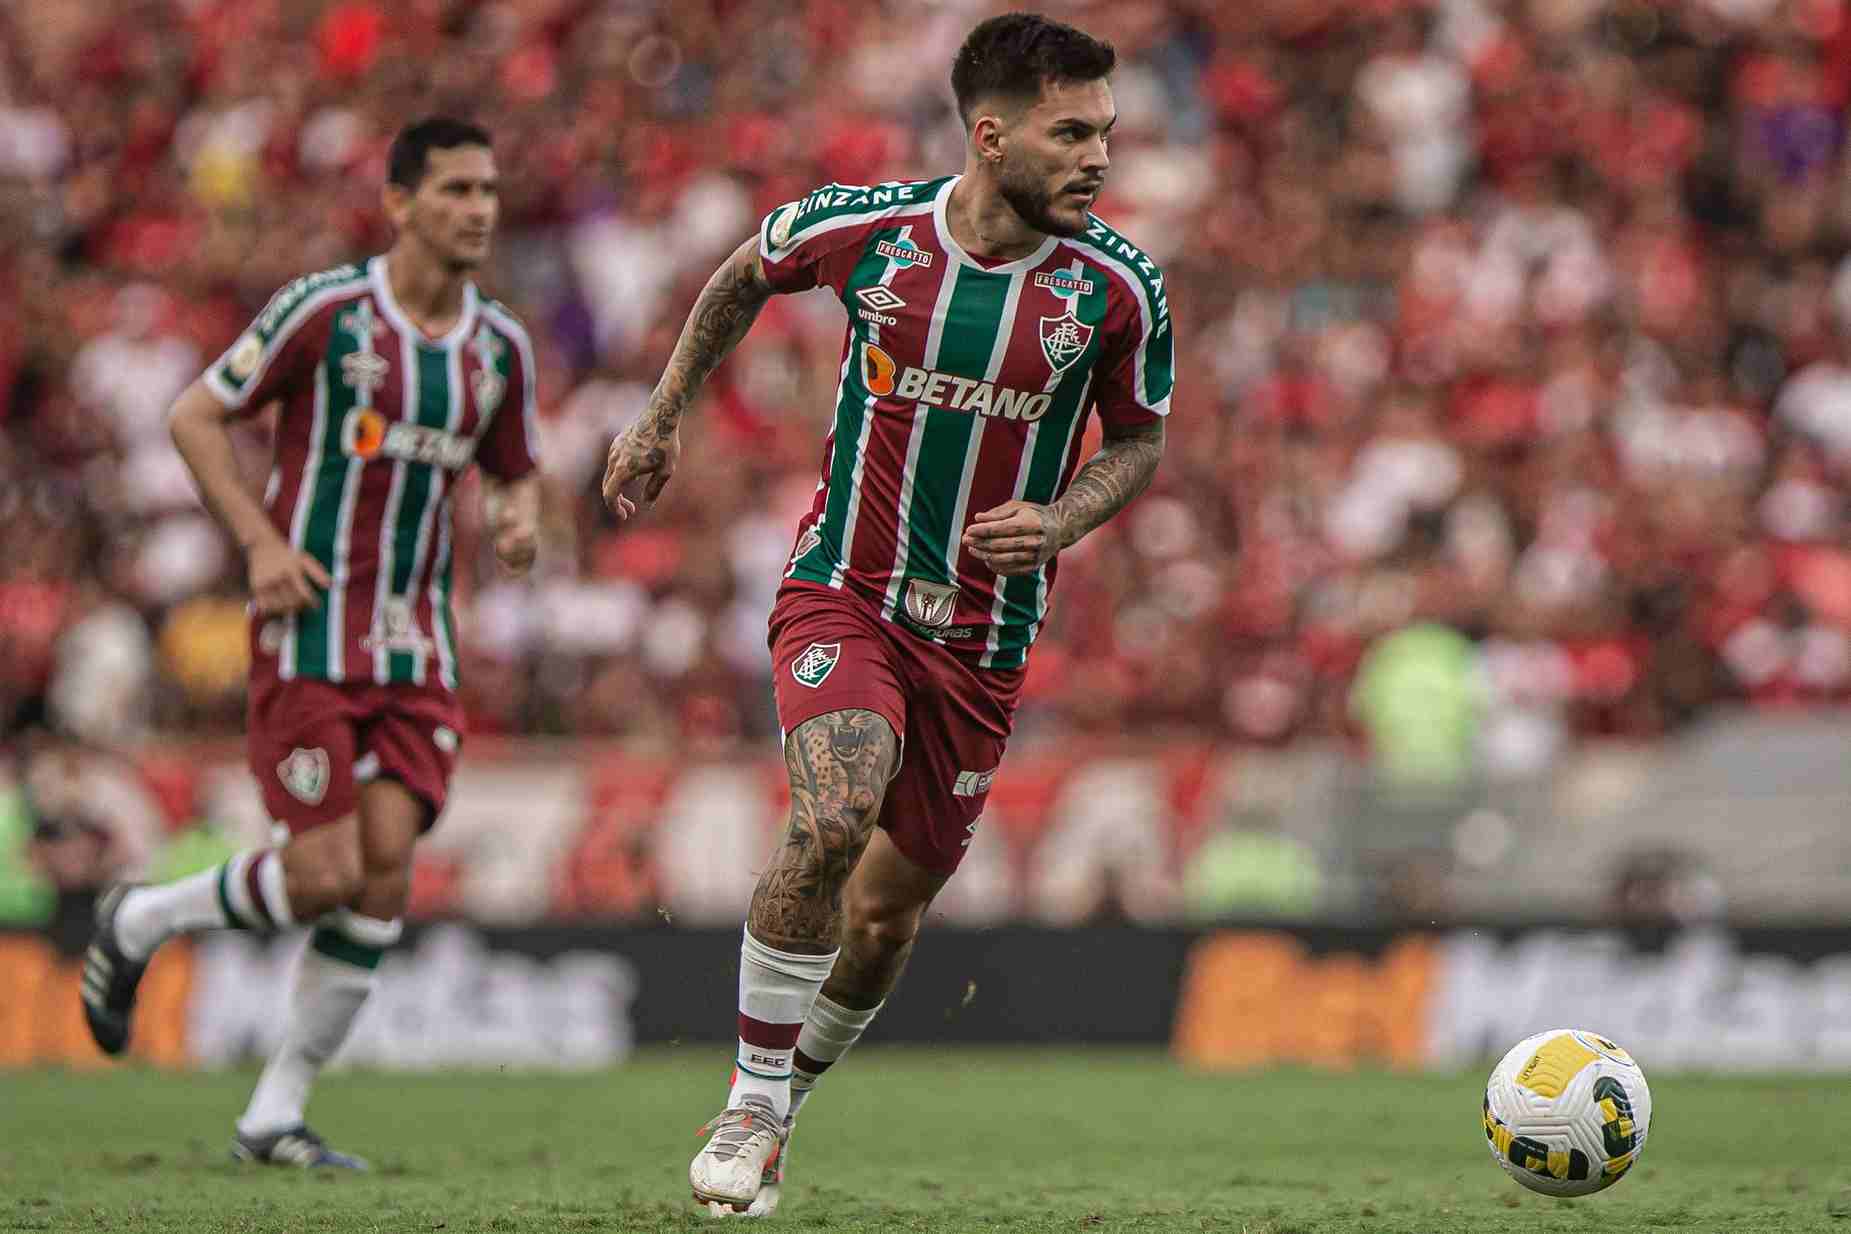 Betano patrocina grandes times do futebol brasileiro